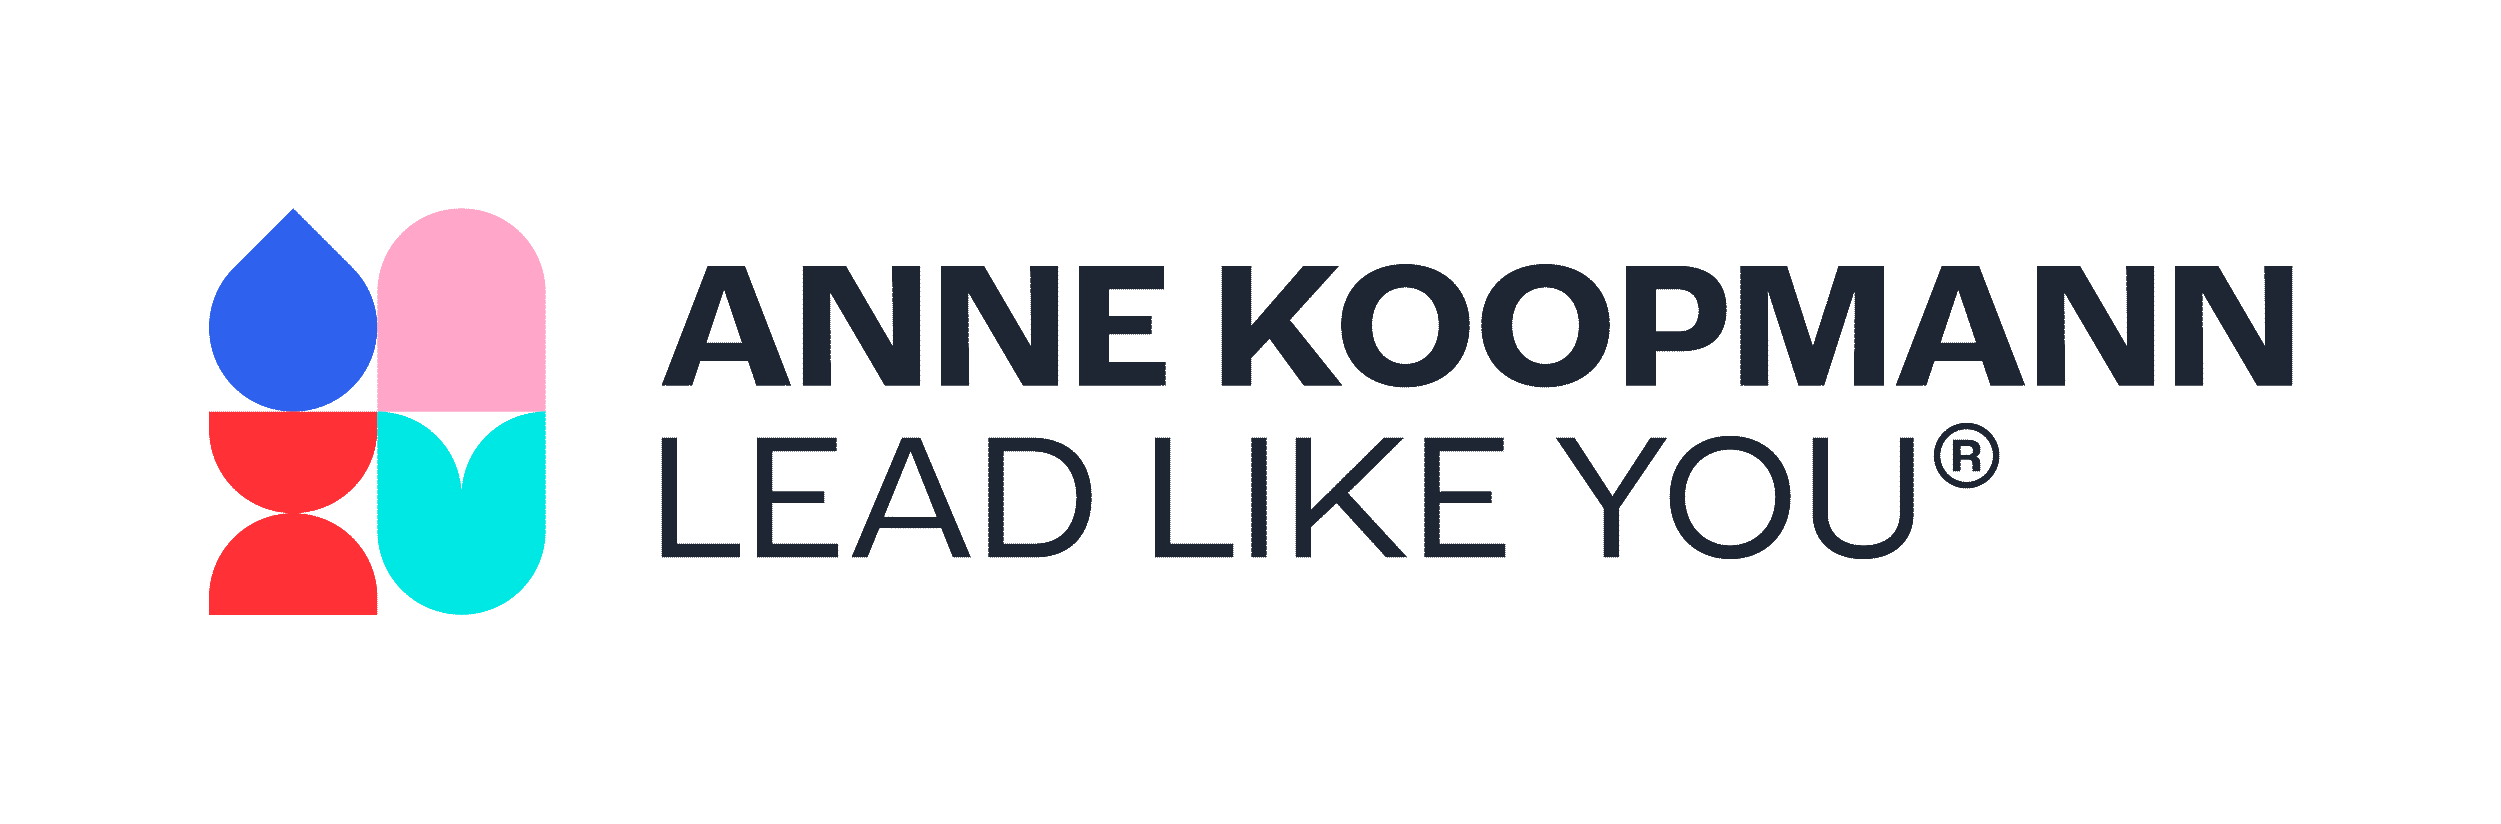 Anne Koopmann - Lead like YOU!